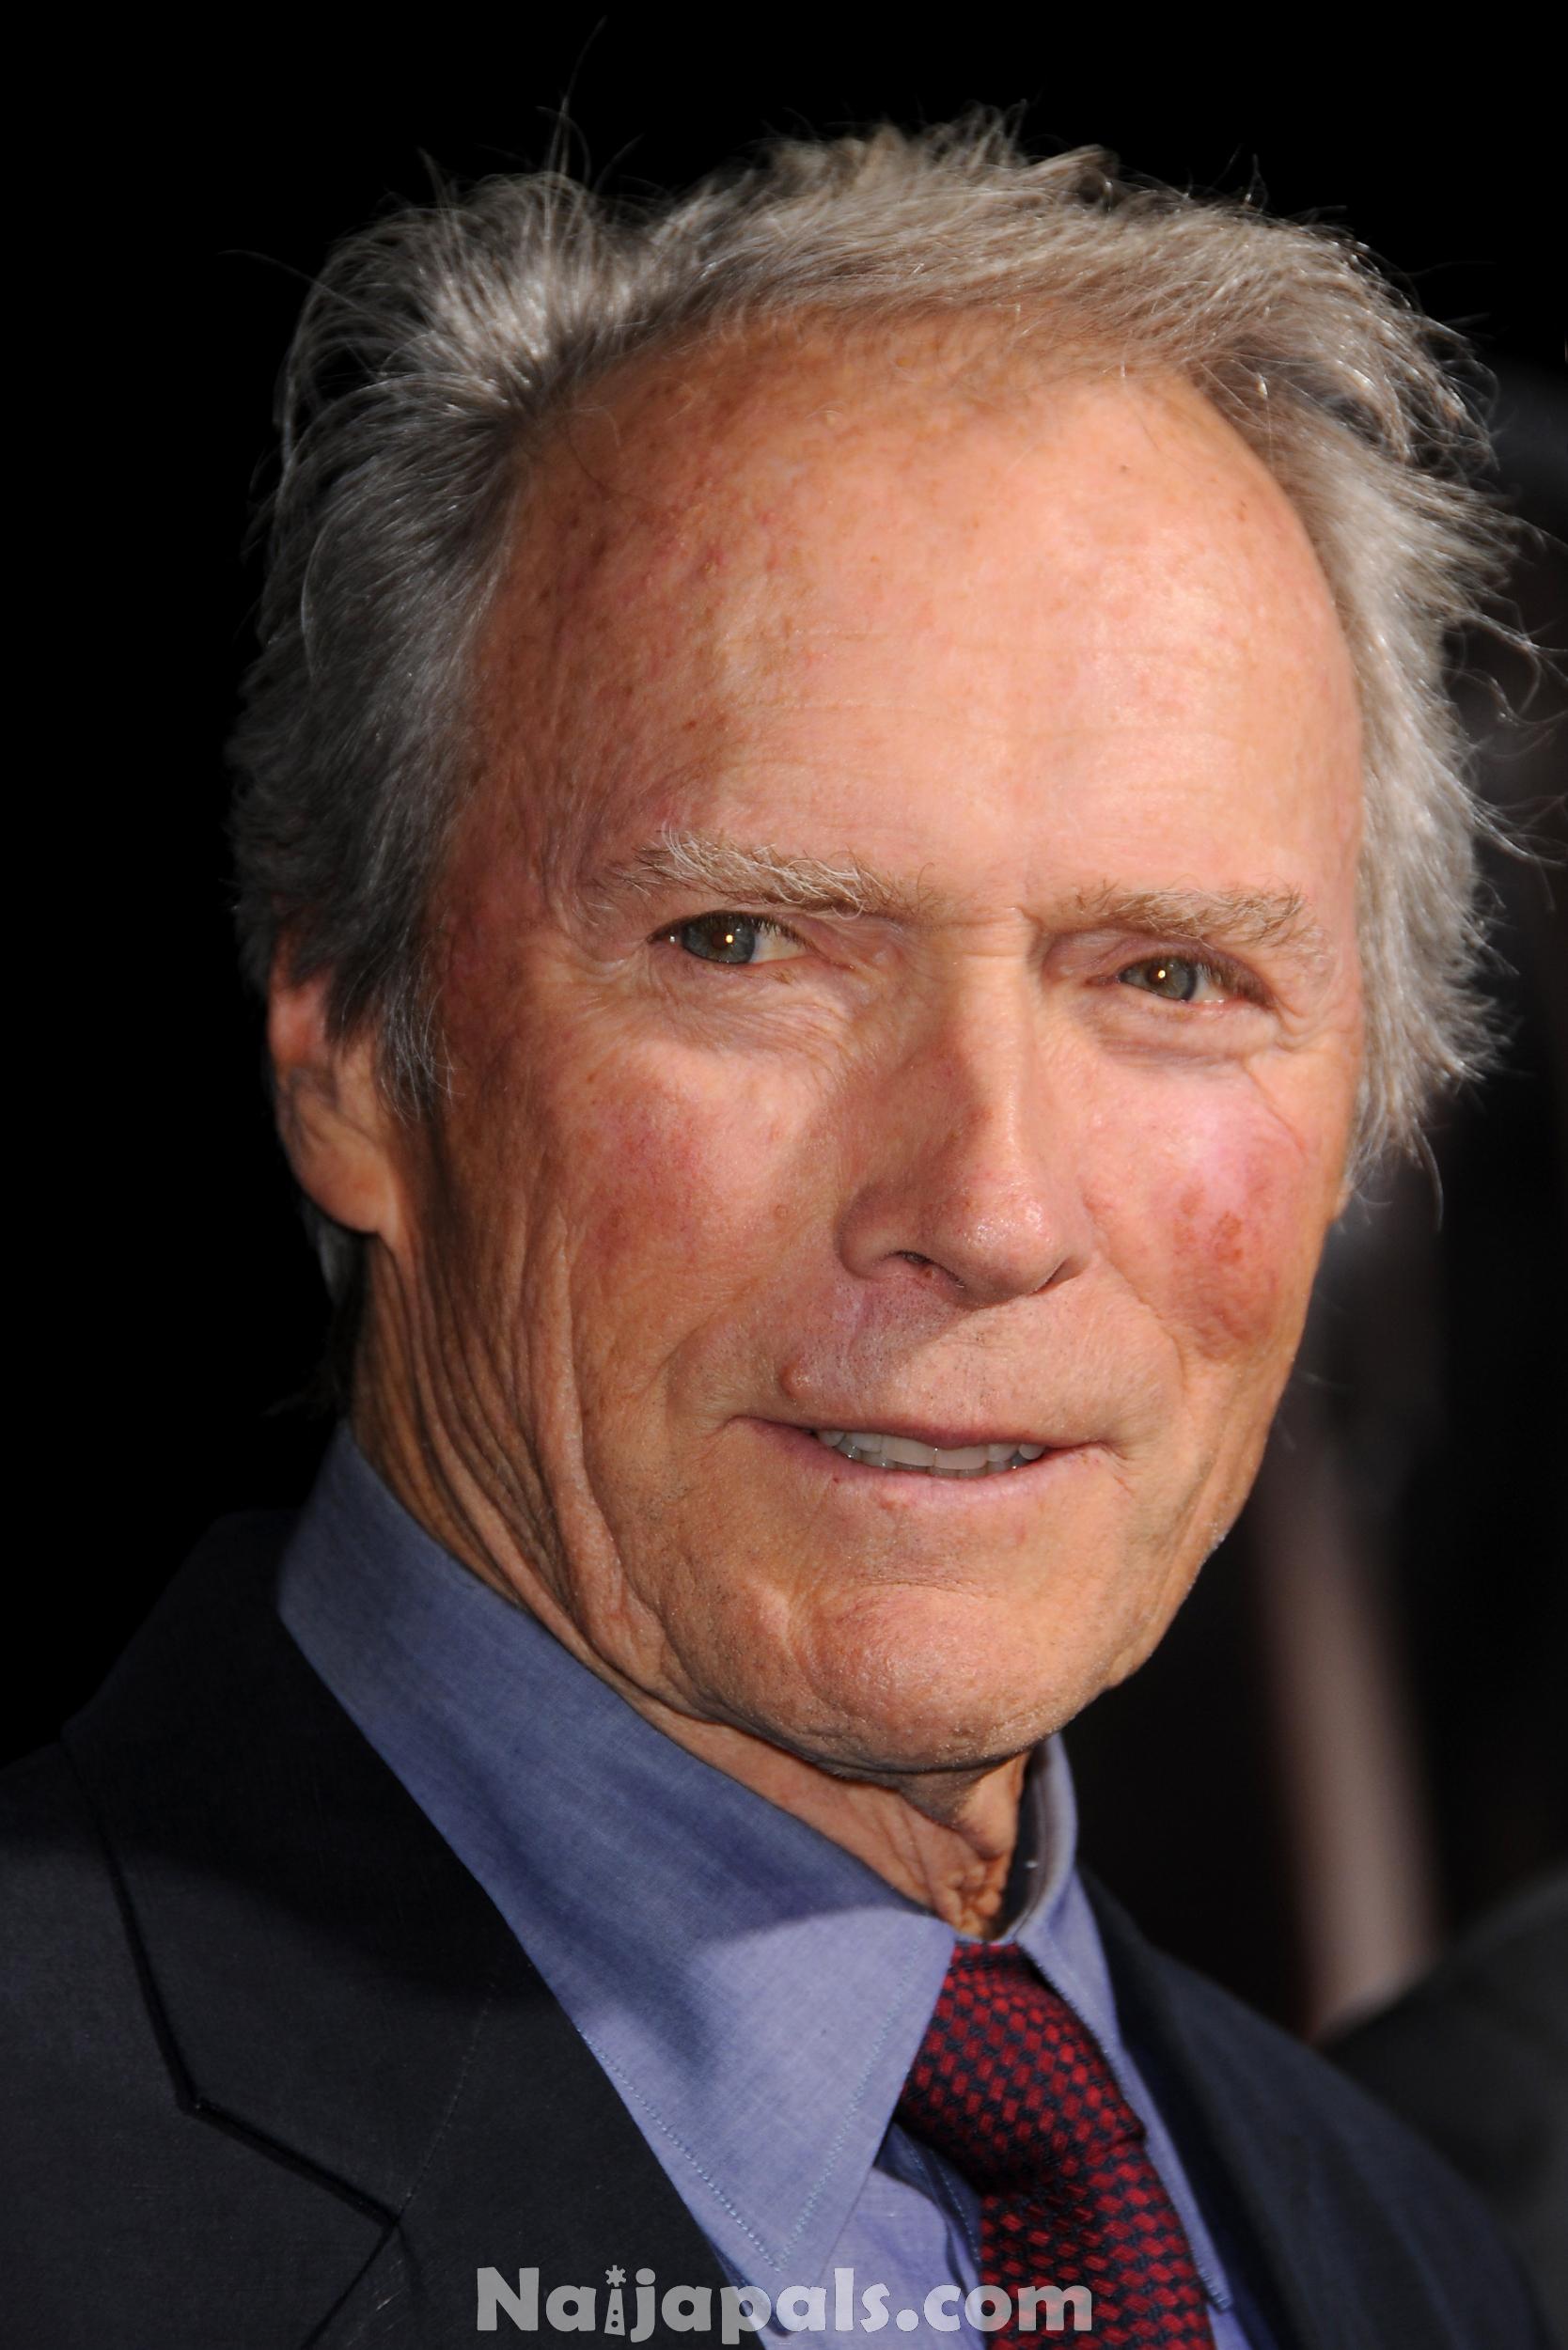 6. Clint Eastwood